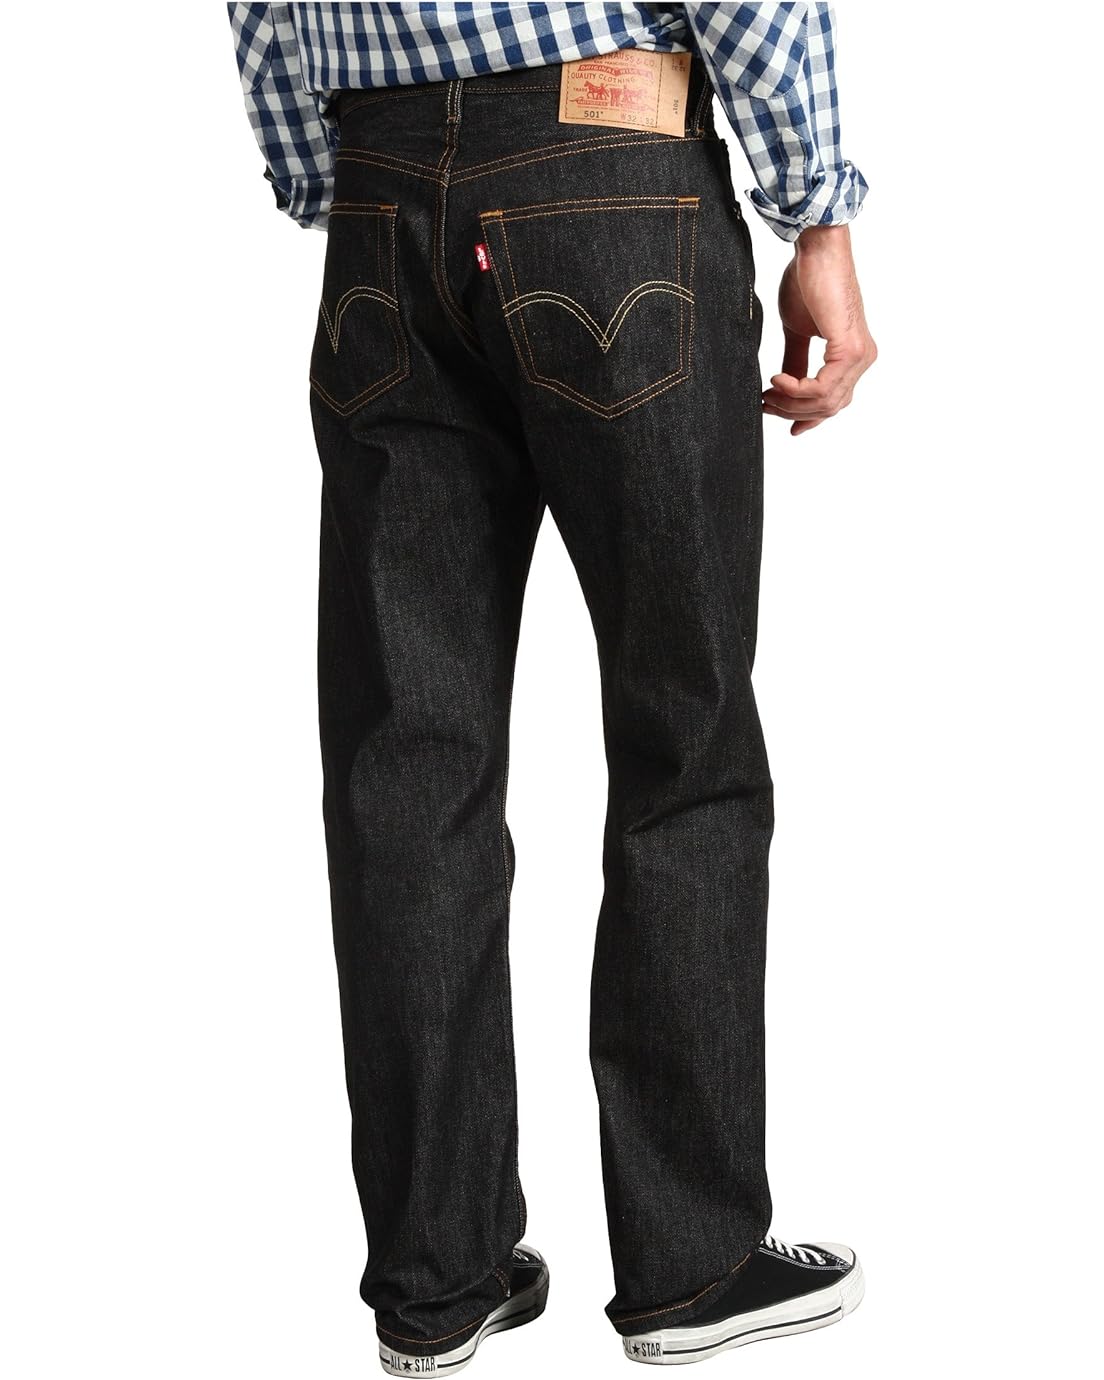 리바이스 Levis Mens 501 Original Shrink-to-Fit Jeans